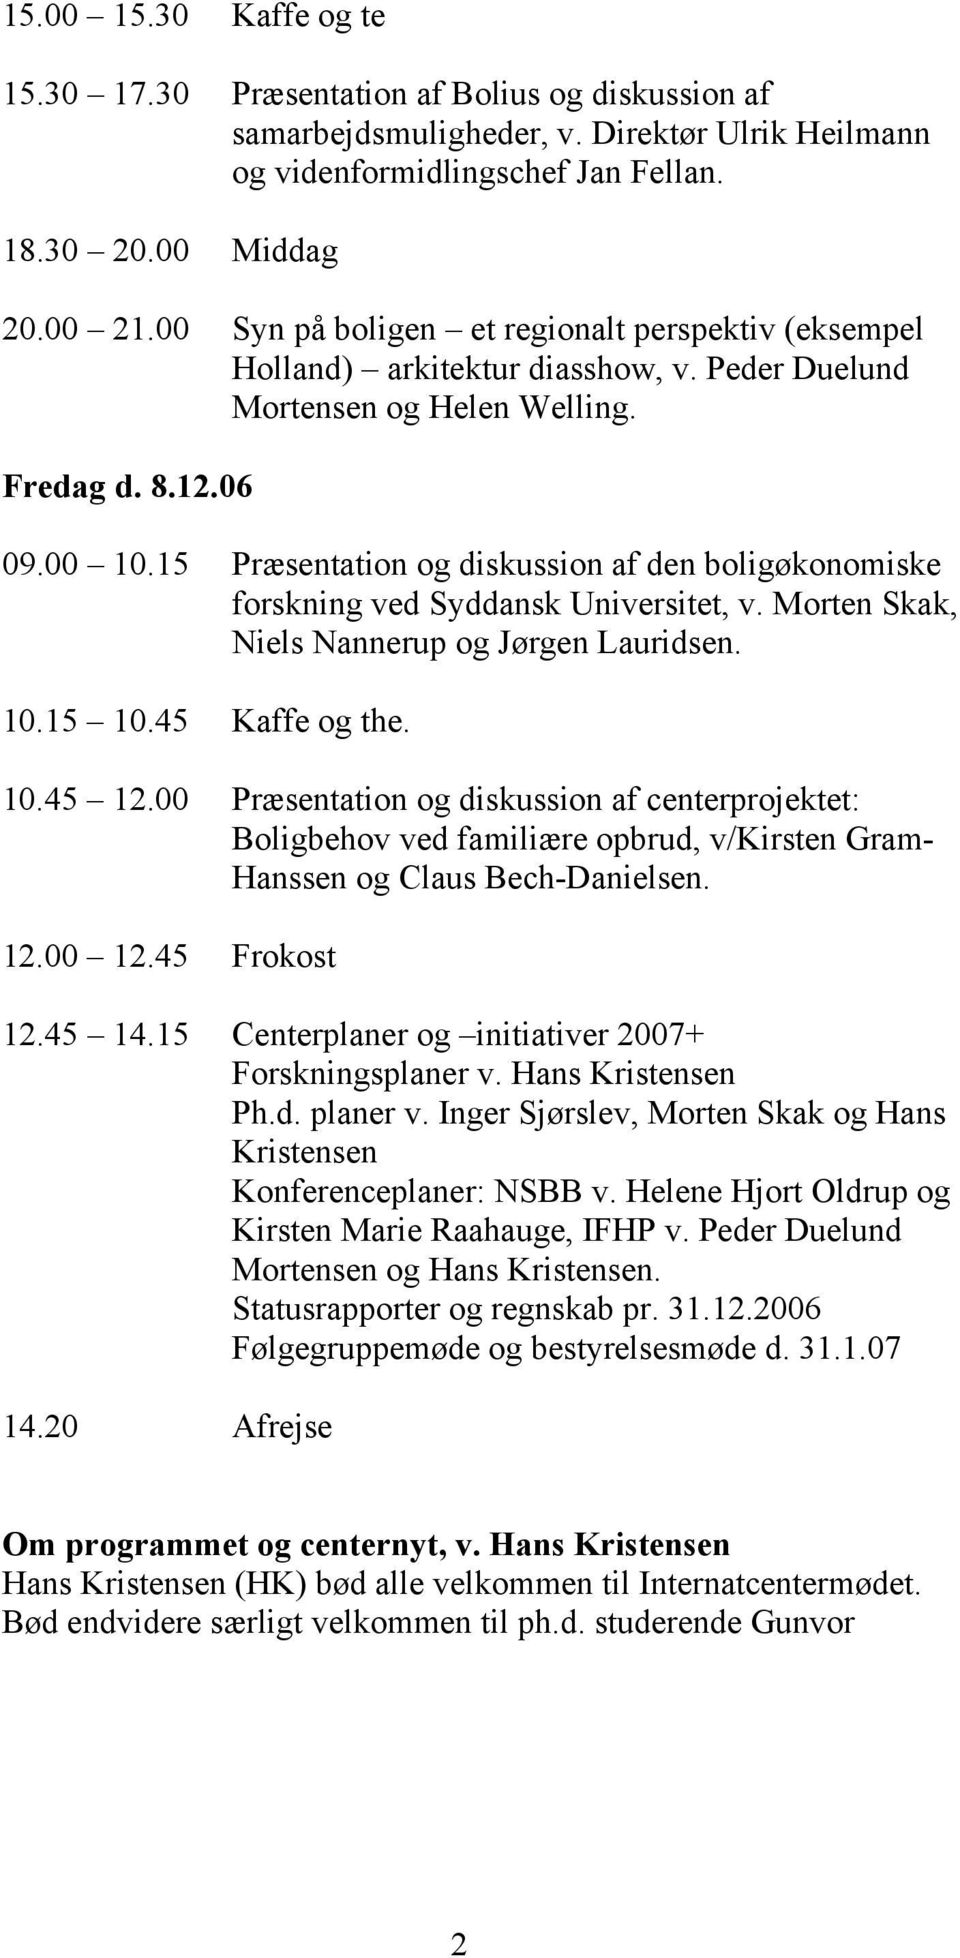 15 Præsentation og diskussion af den boligøkonomiske forskning ved Syddansk Universitet, v. Morten Skak, Niels Nannerup og Jørgen Lauridsen. 10.15 10.45 Kaffe og the. 10.45 12.